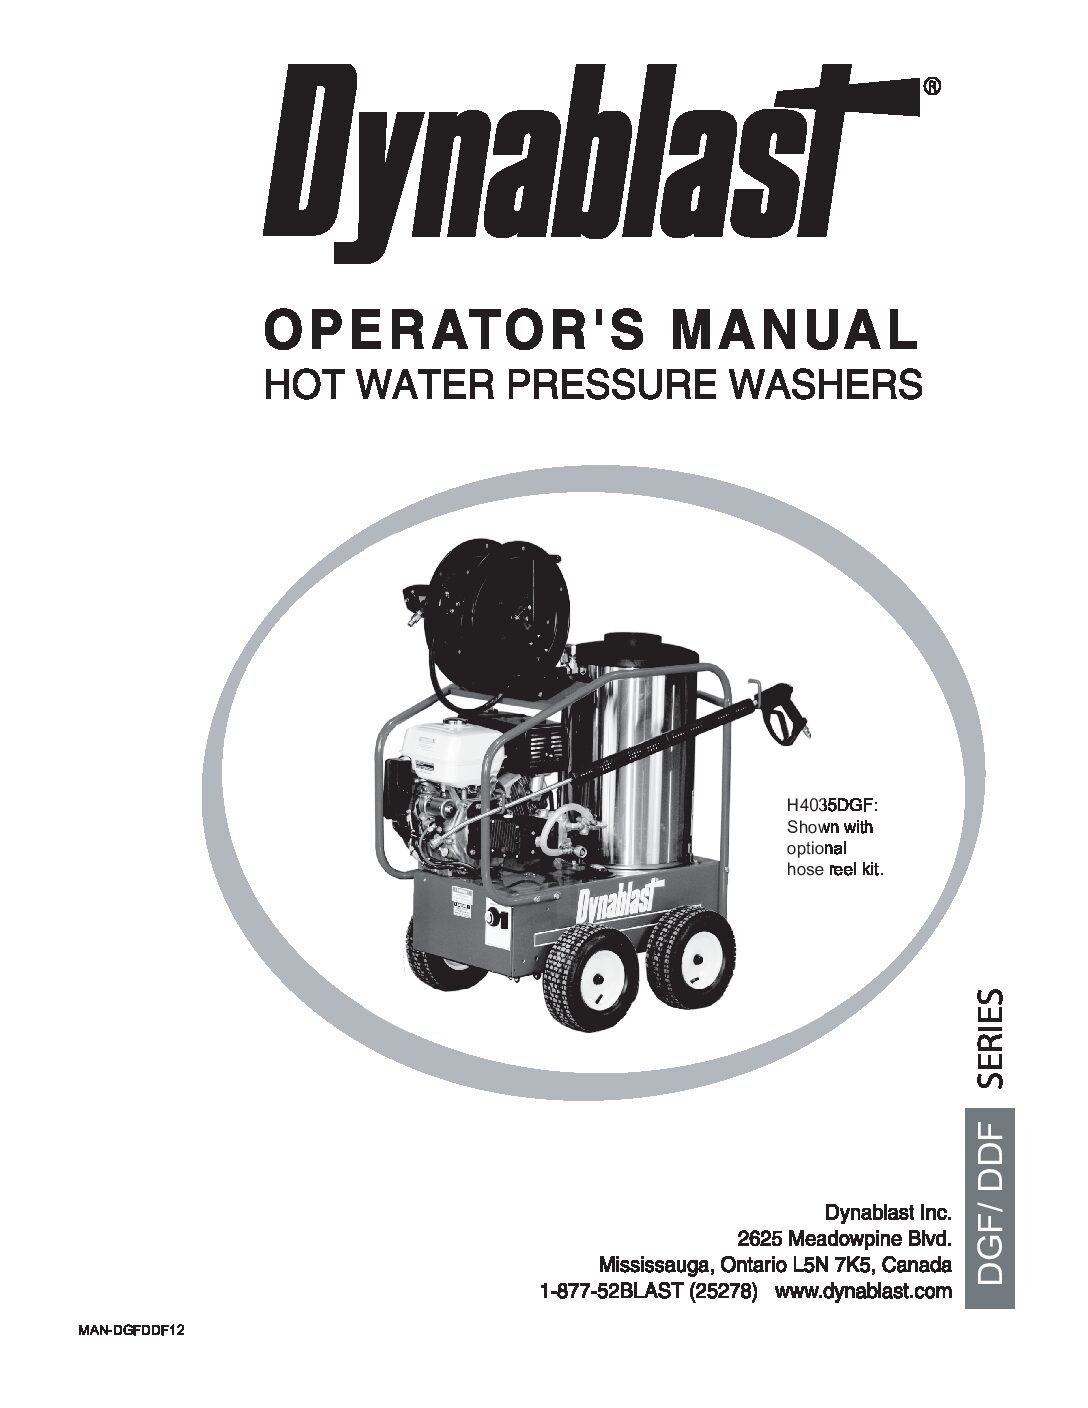 Dynablast H4035DGF Hot Water Pressure Washer Manual English